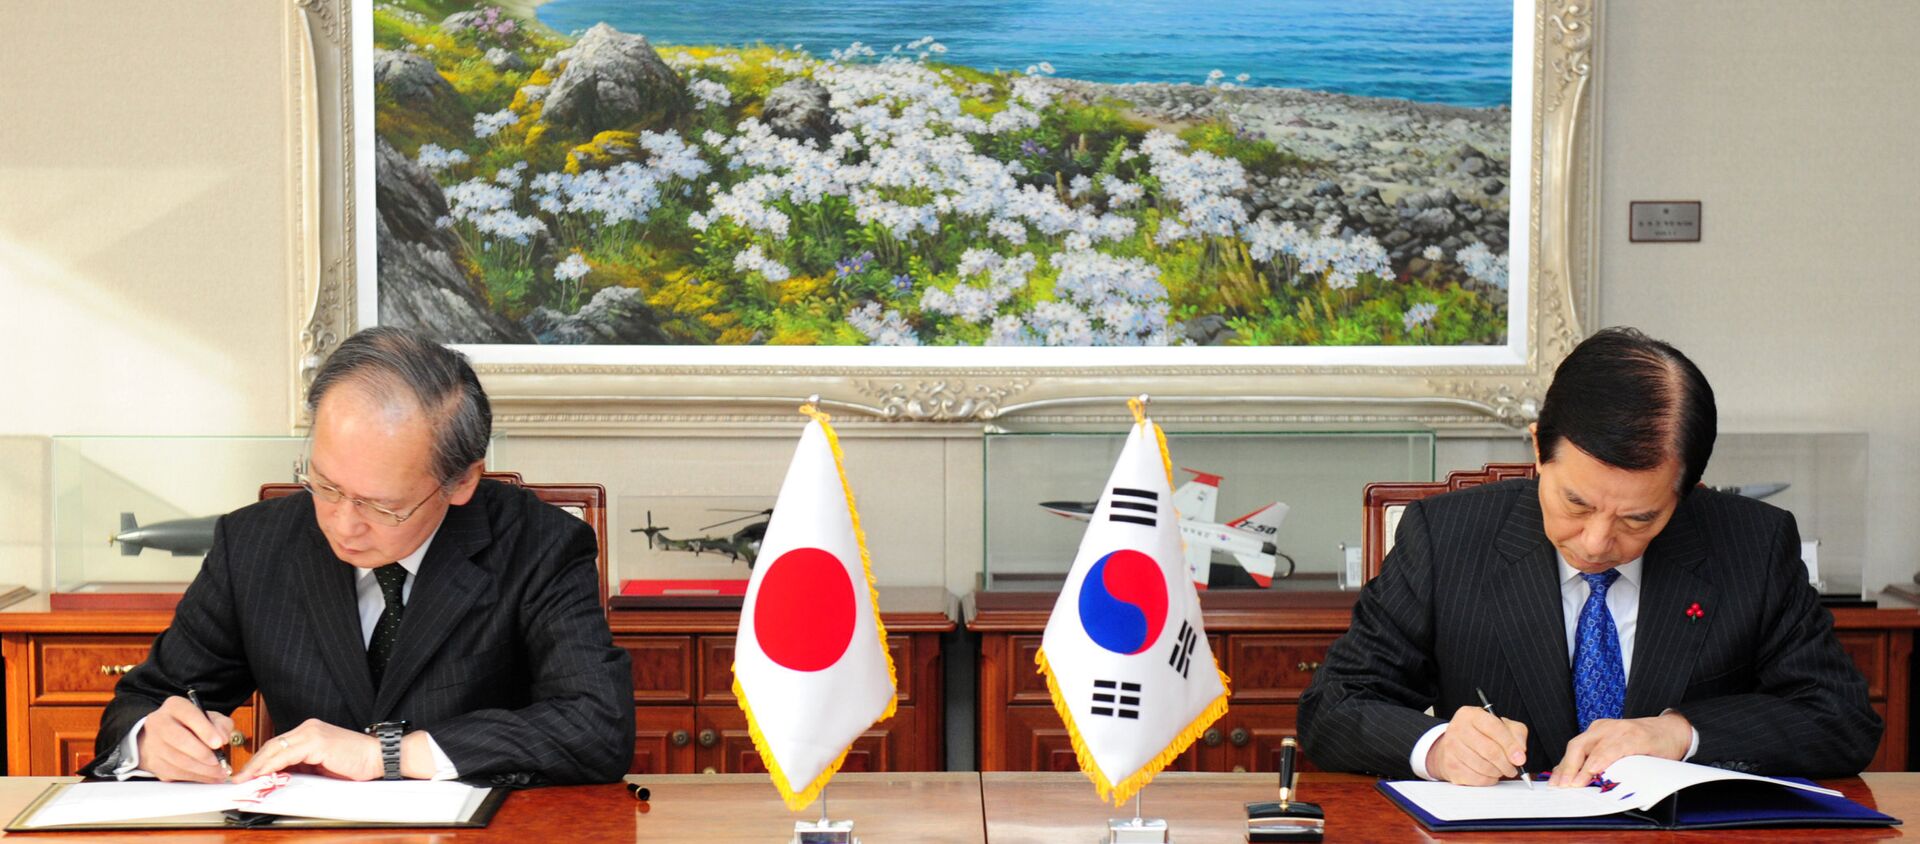 Güney Kore ile Japonya arasında askeri istihbarat paylaşımı anlaşması imzalandı. - Sputnik Türkiye, 1920, 22.11.2019